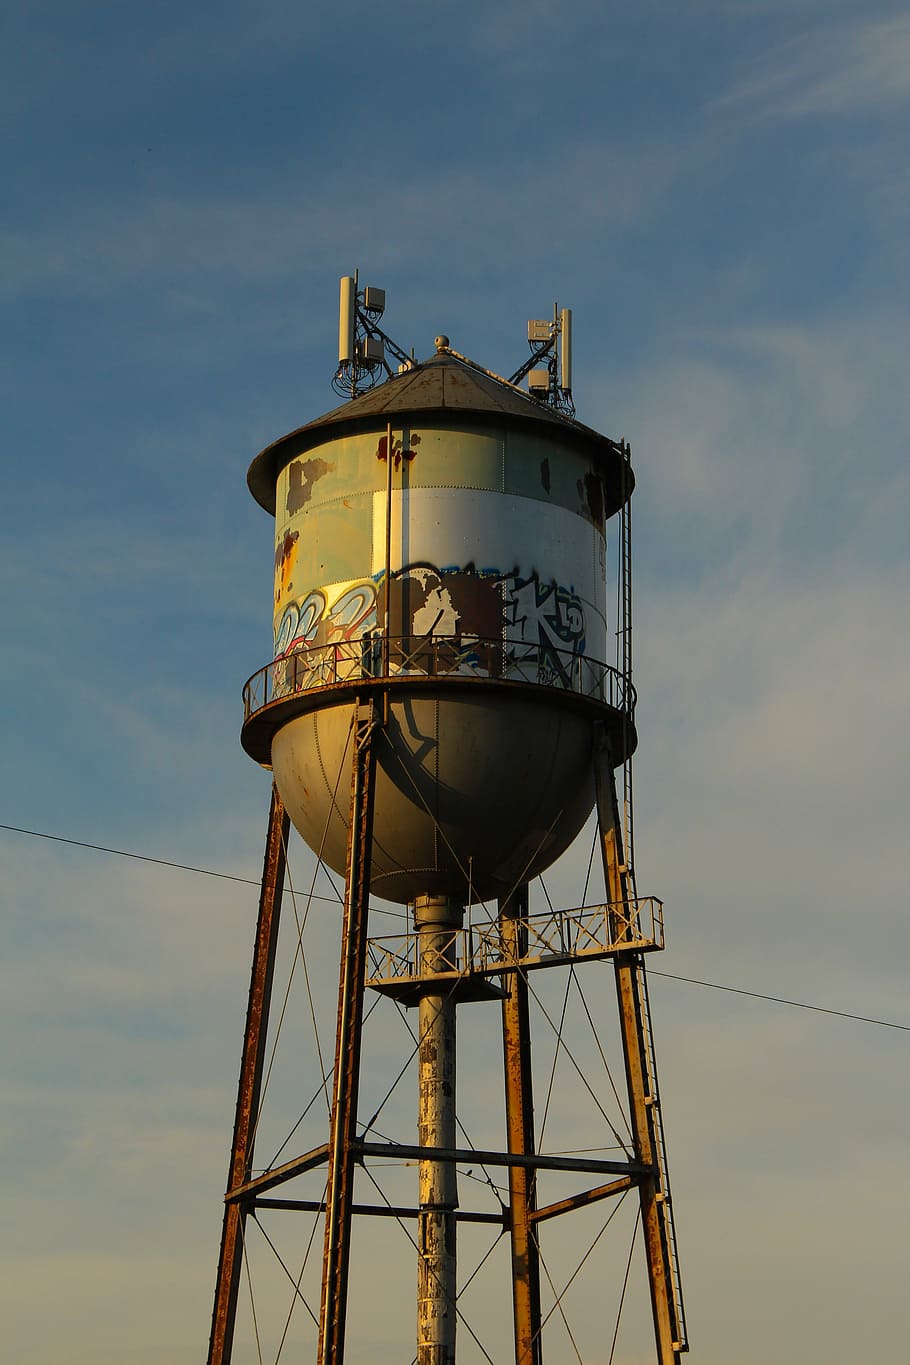 water tower, tower, urban, historic, metal, landmark, vintage, steel, old, sky